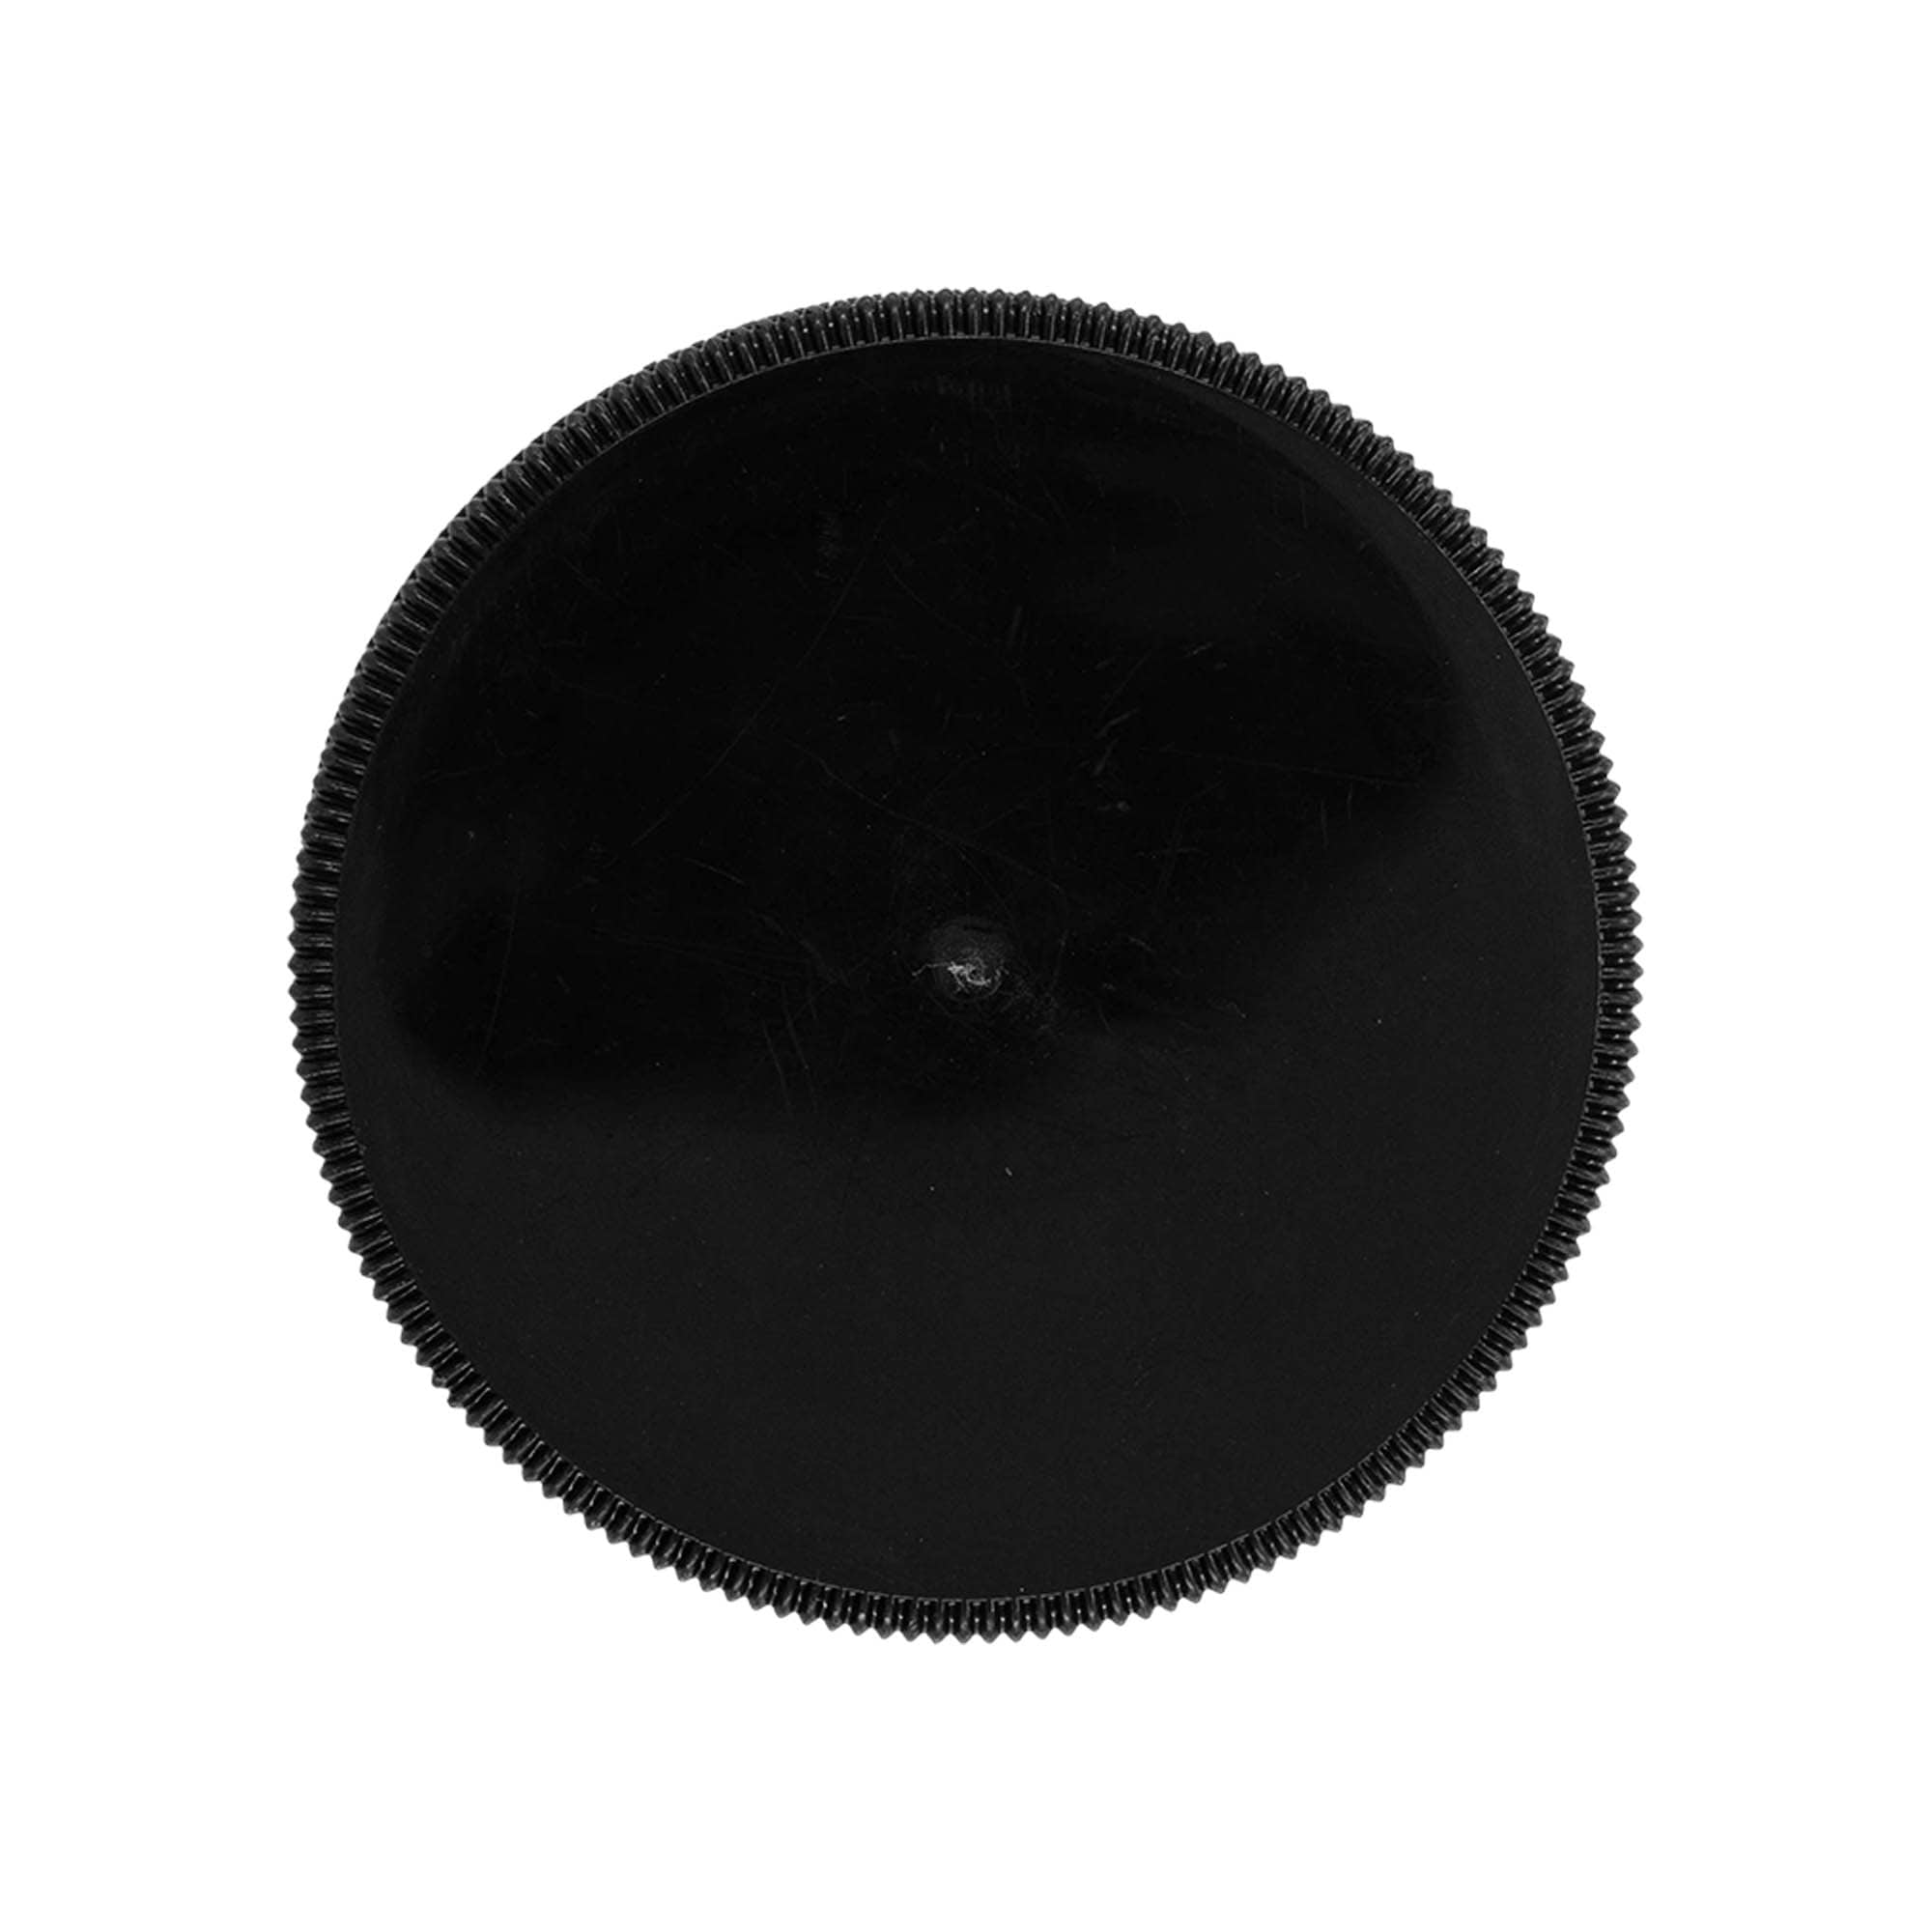 Zakrętka z wkładką EPE, tworzywo sztuczne PP, kolor czarny, do zamknięcia: DIN 60